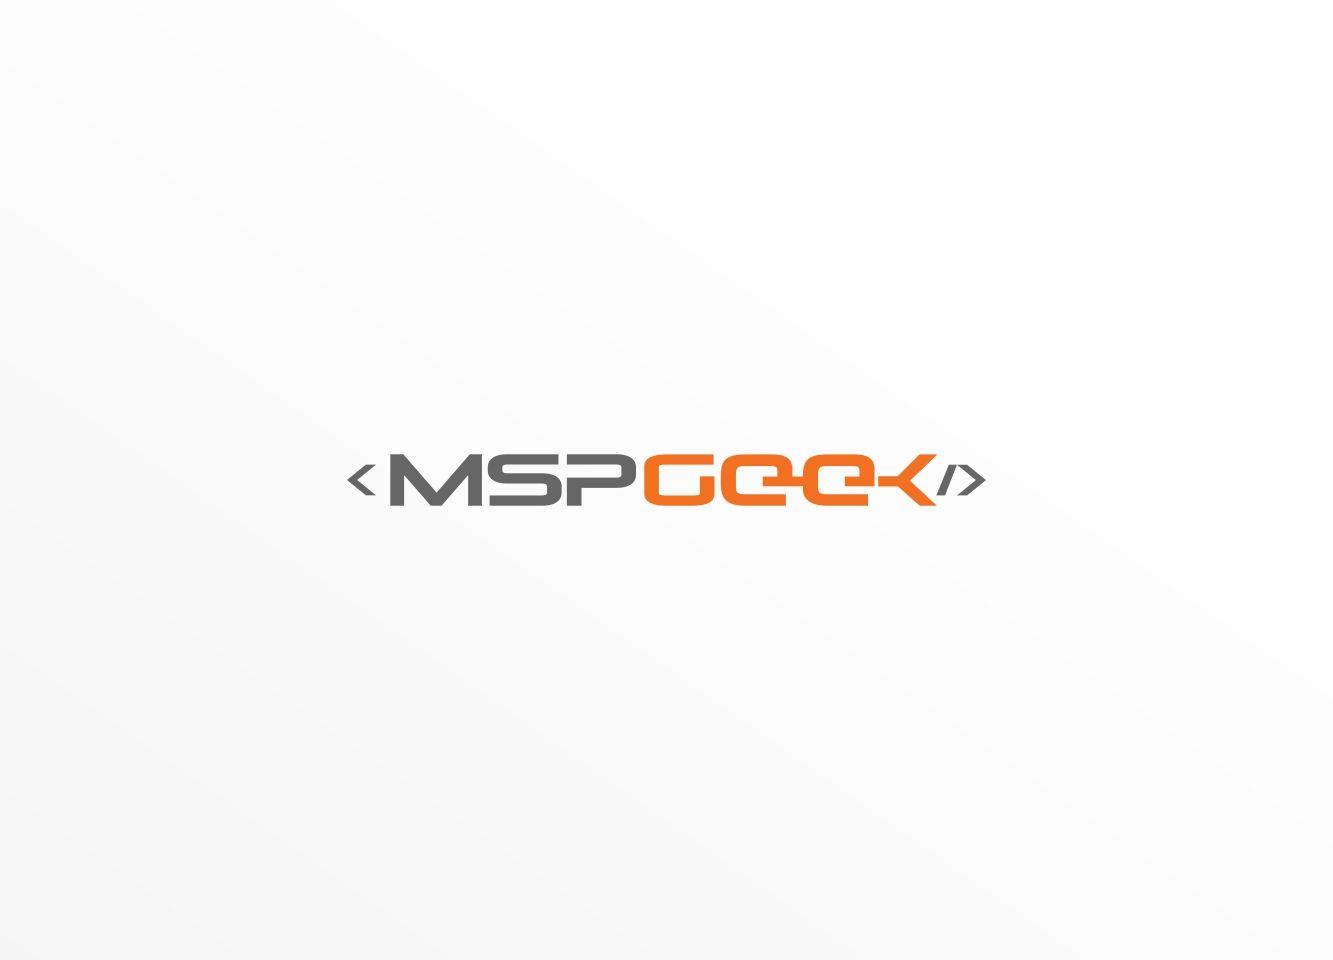 Msep Logo - Modern, Conservative, Information Technology Logo Design for MSPGeek ...